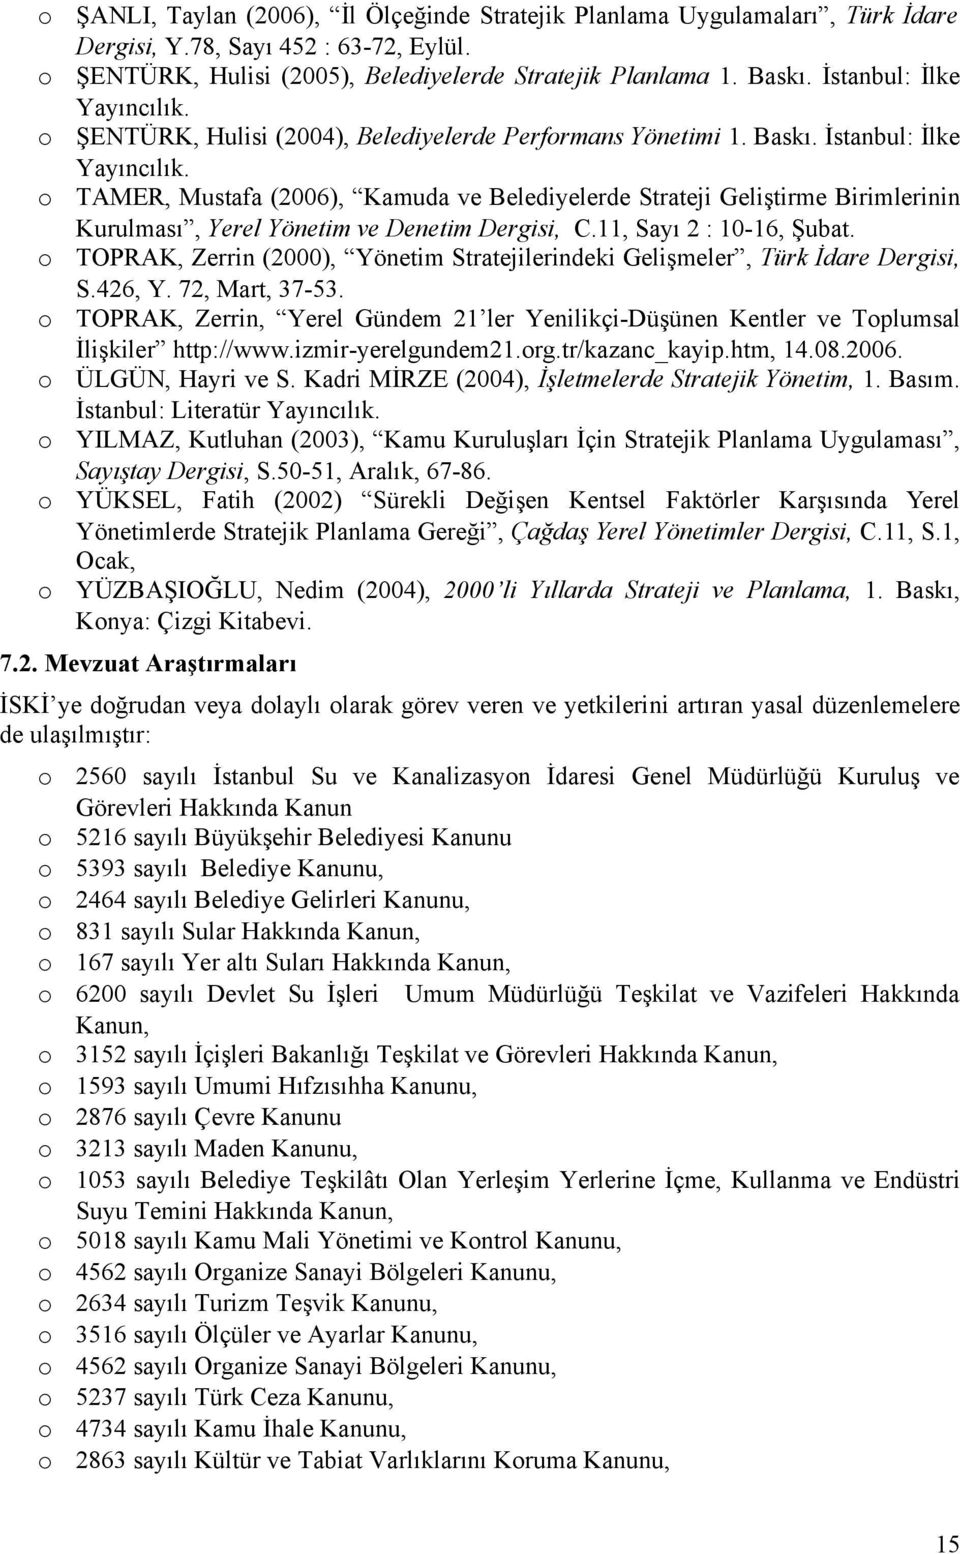 TAMER, Mustafa (2006), Kamuda ve Belediyelerde Strateji Geliştirme Birimlerinin Kurulması, Yerel Yönetim ve Denetim Dergisi, C.11, Sayı 2 : 10-16, Şubat.